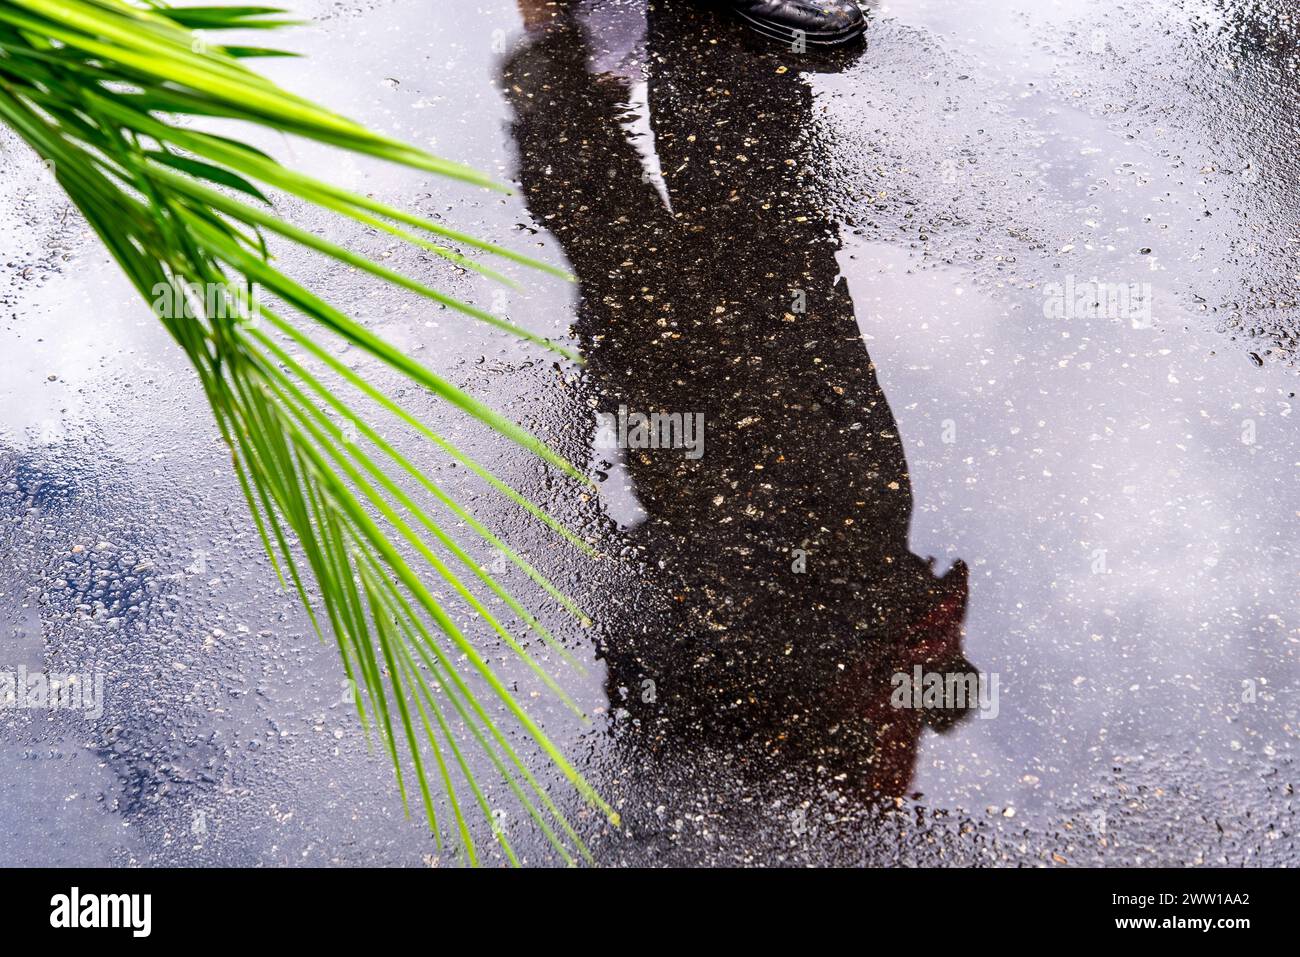 Salvador, Bahia, Brésil - 14 avril 2019 : le reflet du peuple catholique est vu sur le sol humide pendant la célébration du dimanche des Rameaux dans la ville de Salvad Banque D'Images